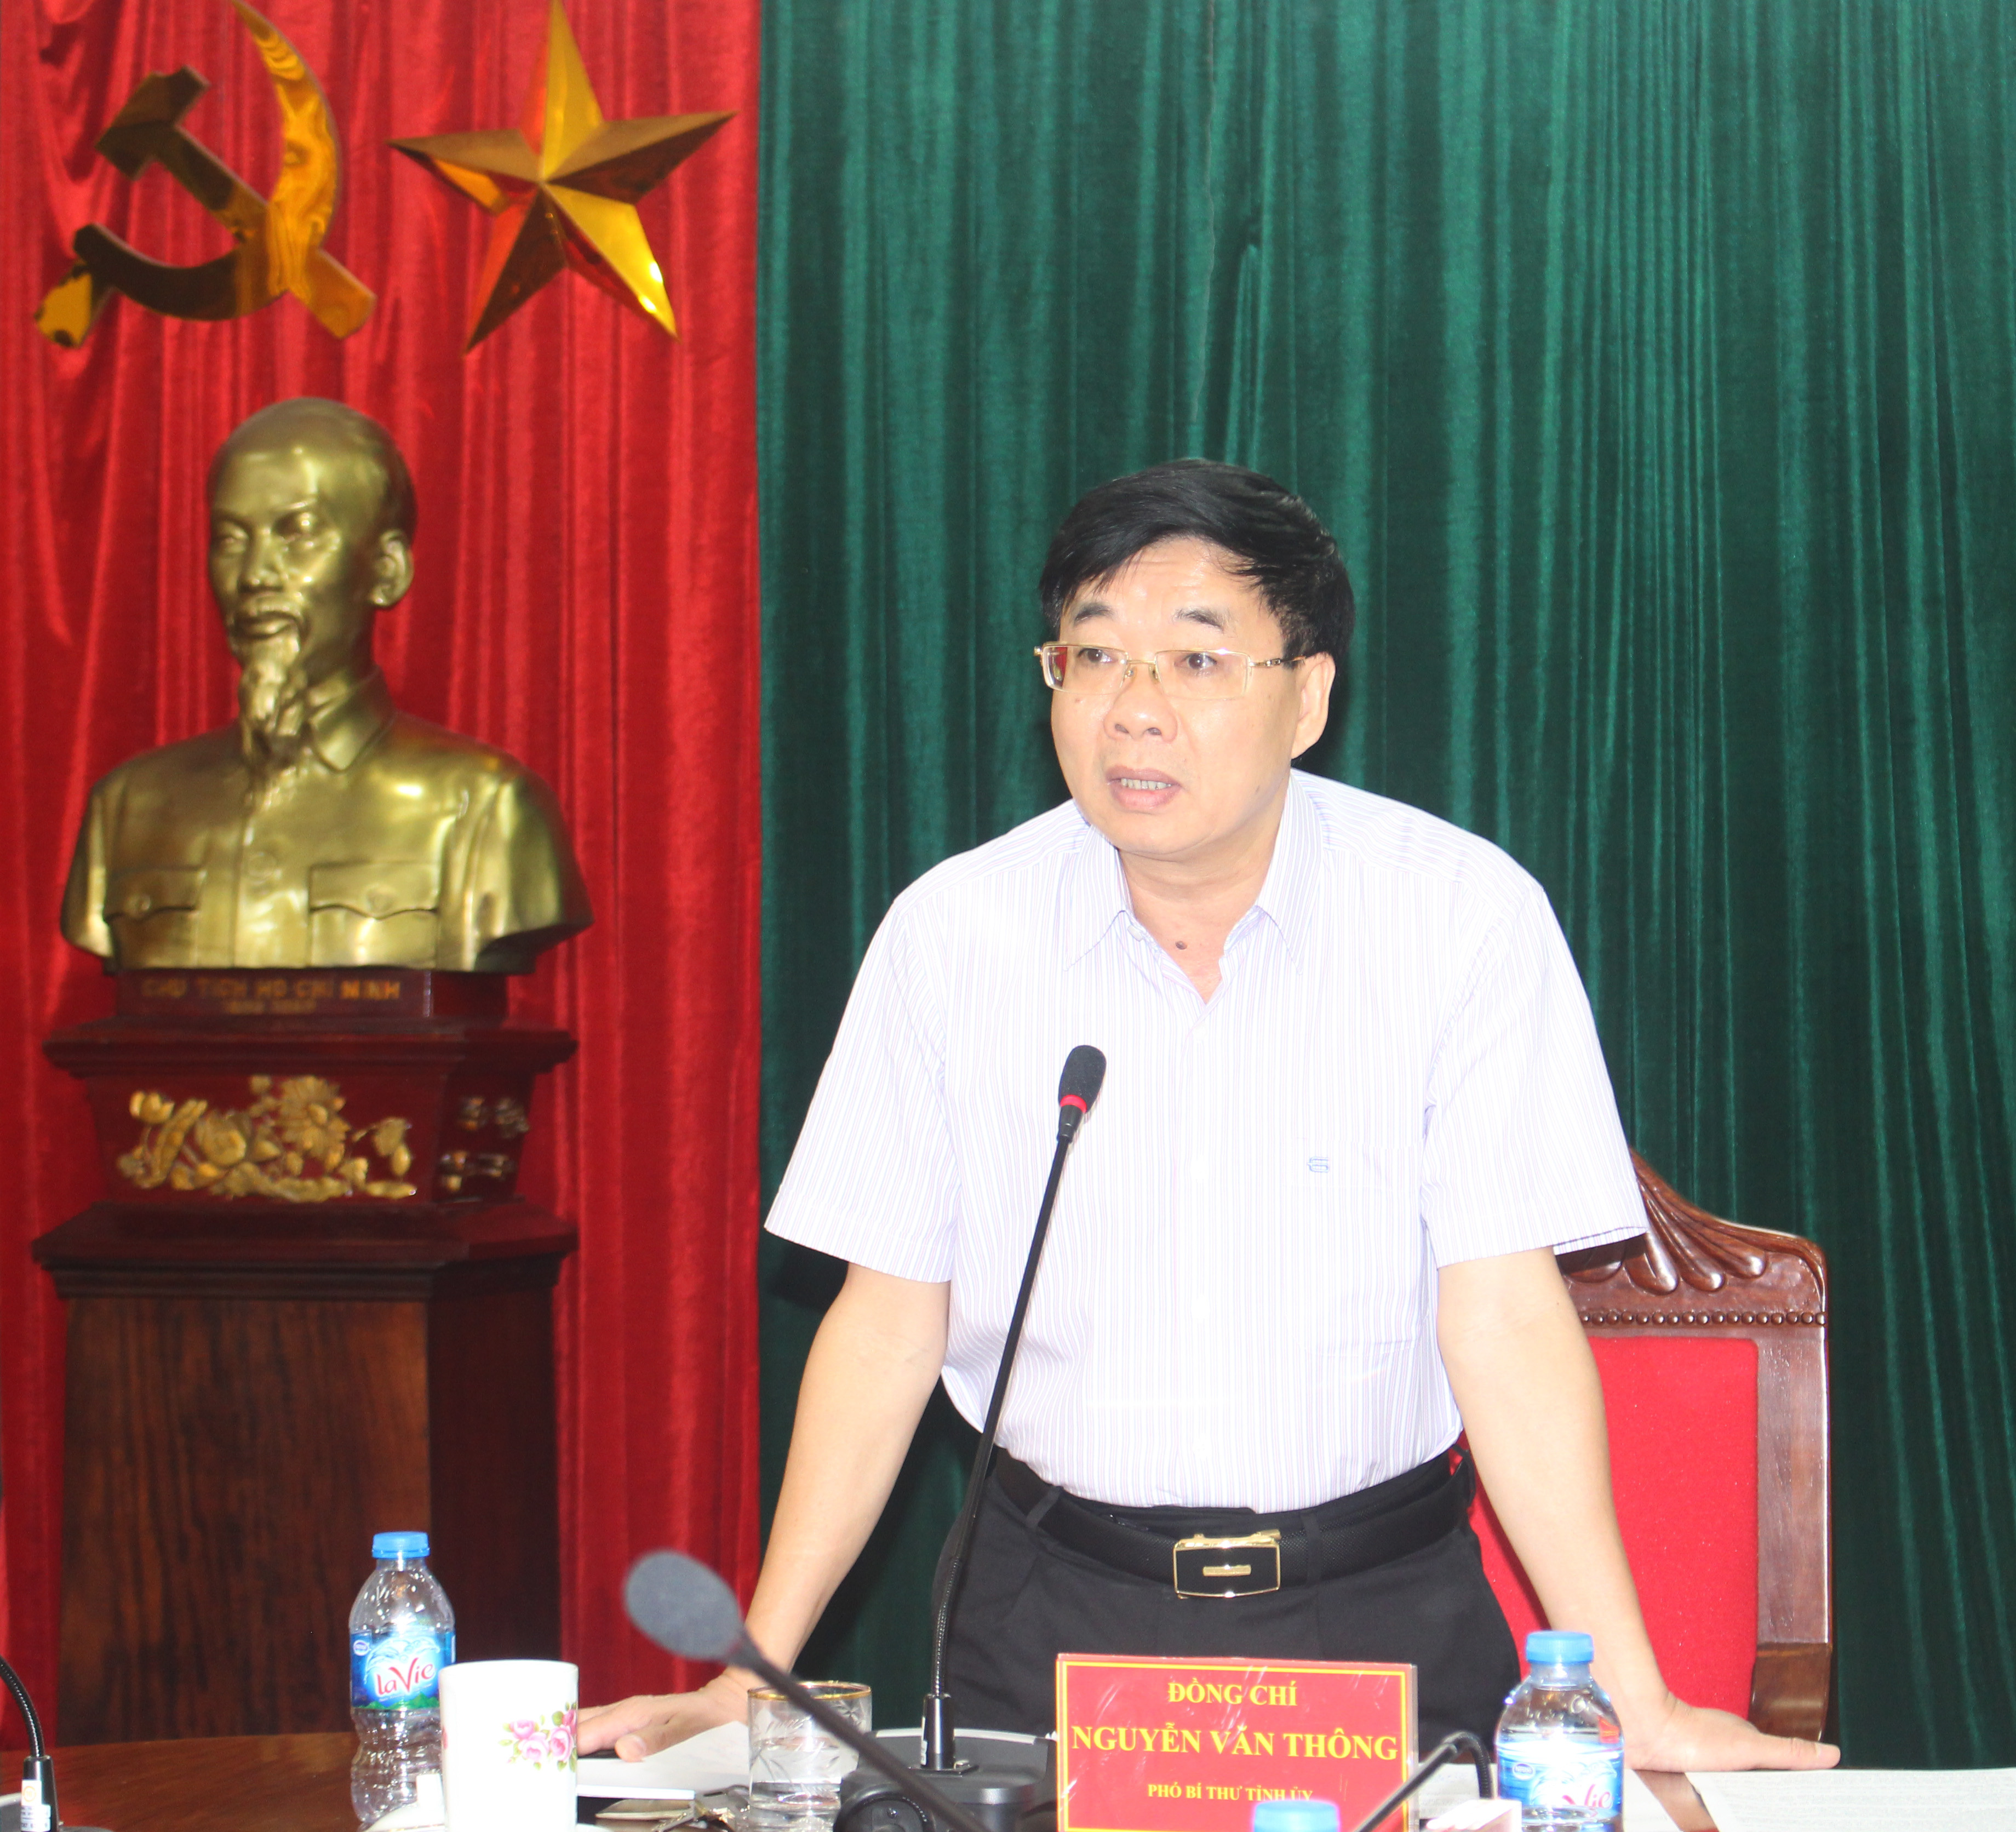 Đồng chí Nguyễn Văn Thông – Phó Bí thư Tỉnh ủy chủ trì hội nghị. Ảnh: Phương Thảo